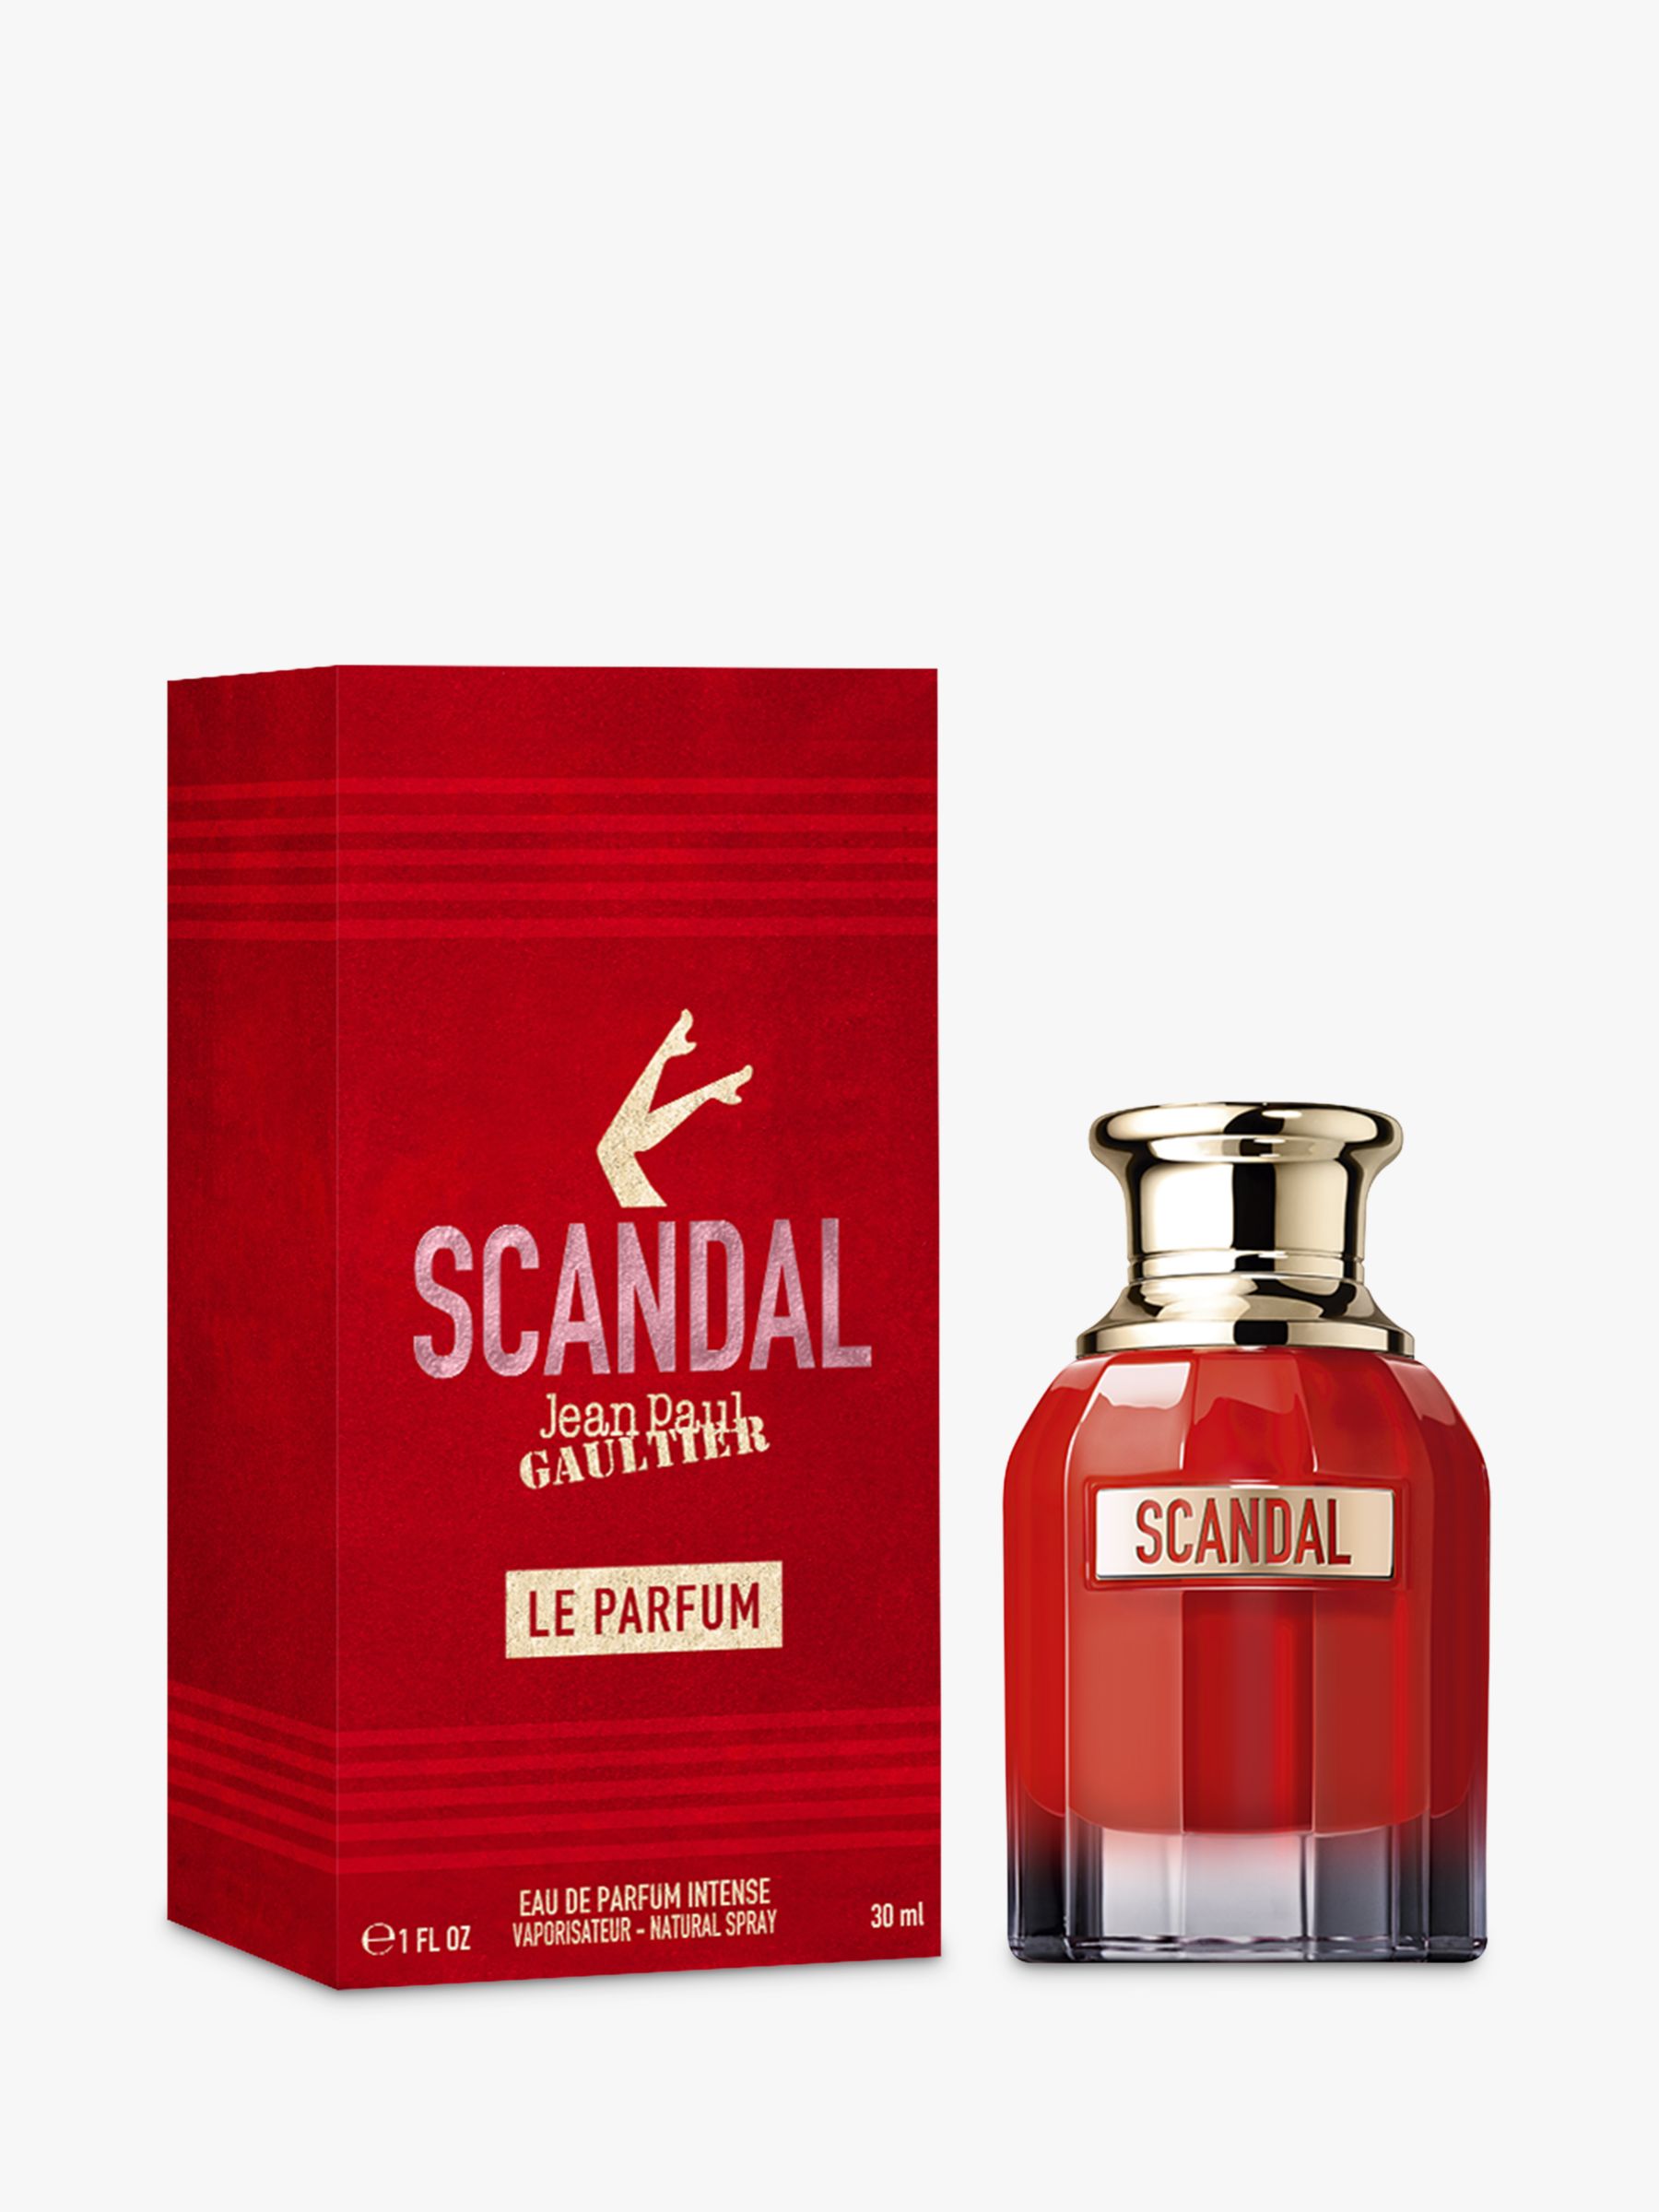 Jean Paul Gaultier Scandal Le Parfum, 30ml at John Lewis & Partners